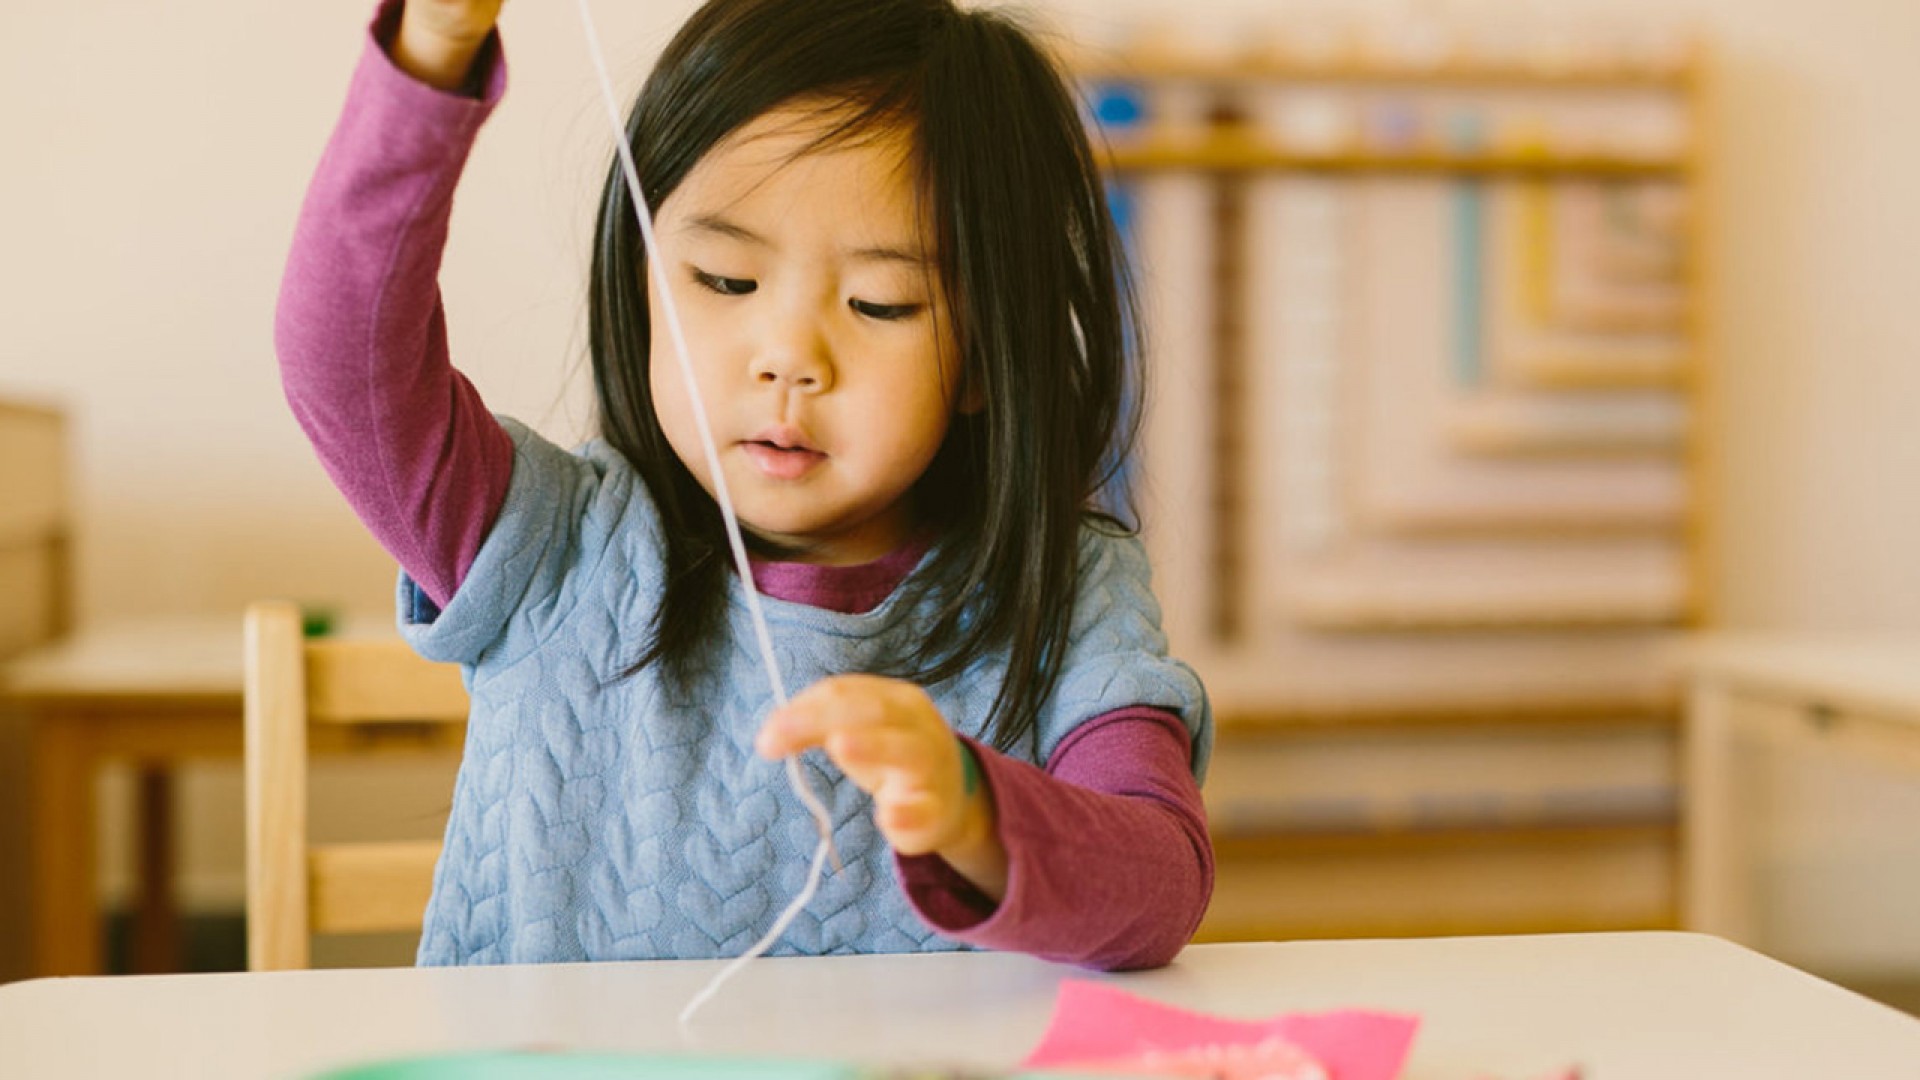 Phương pháp giáo dục Montessori: Tìm hiểu những ưu nhược điểm phụ huynh cần biết | Edu2Review